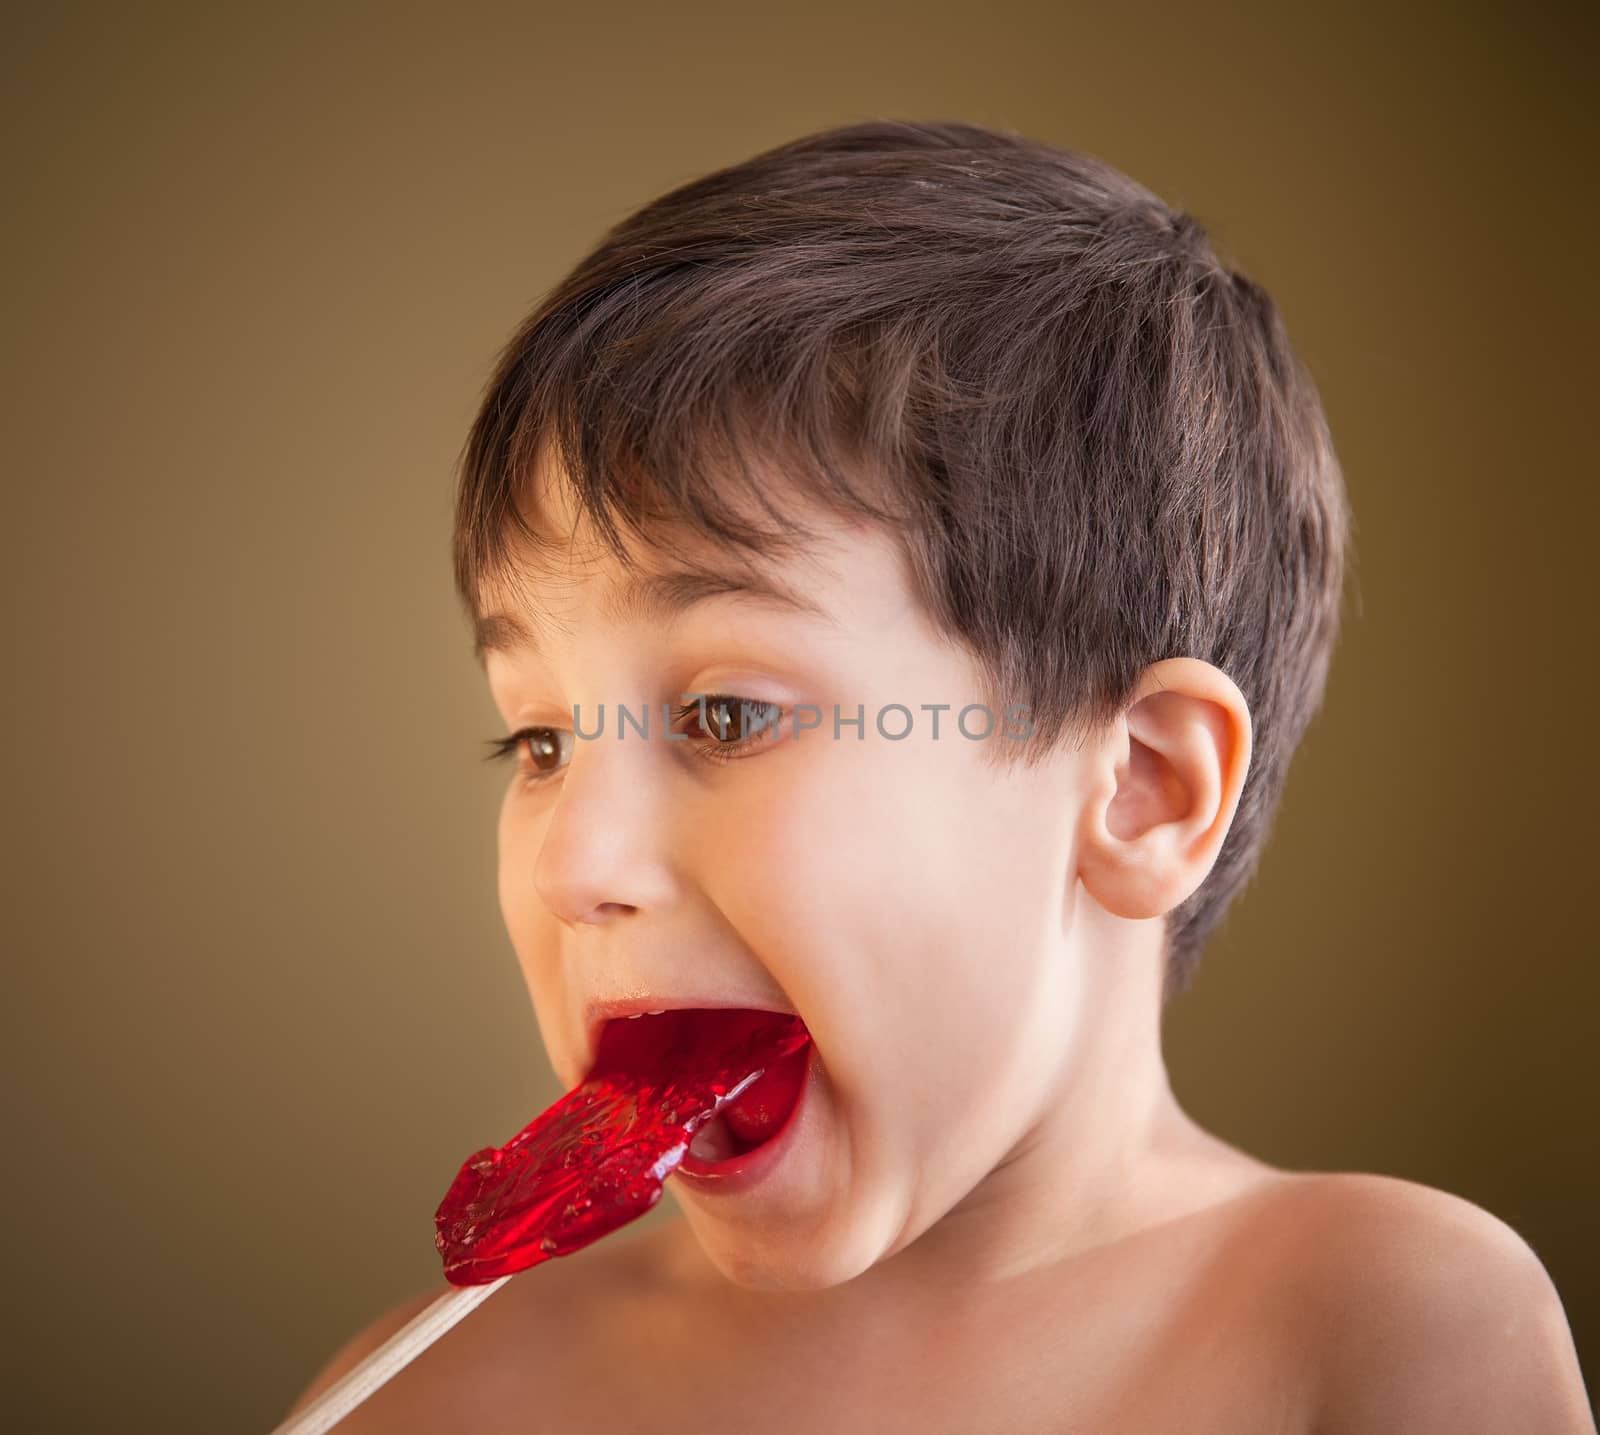 Boy Eating A Lollipop by palinchak